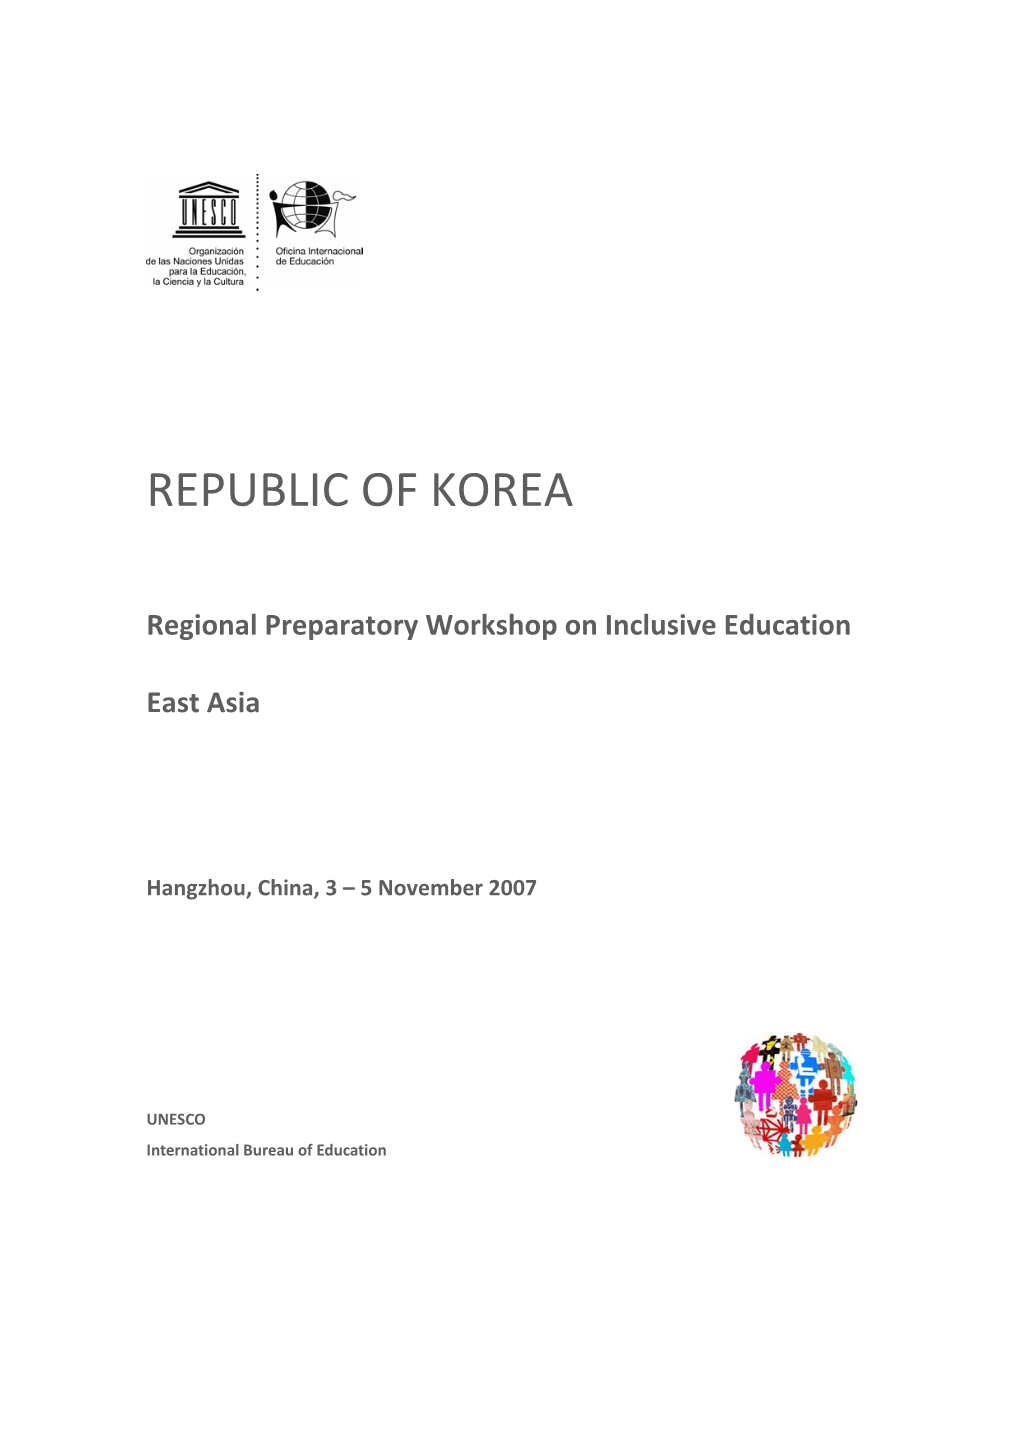 Inclusive Education in the Republic of Korea